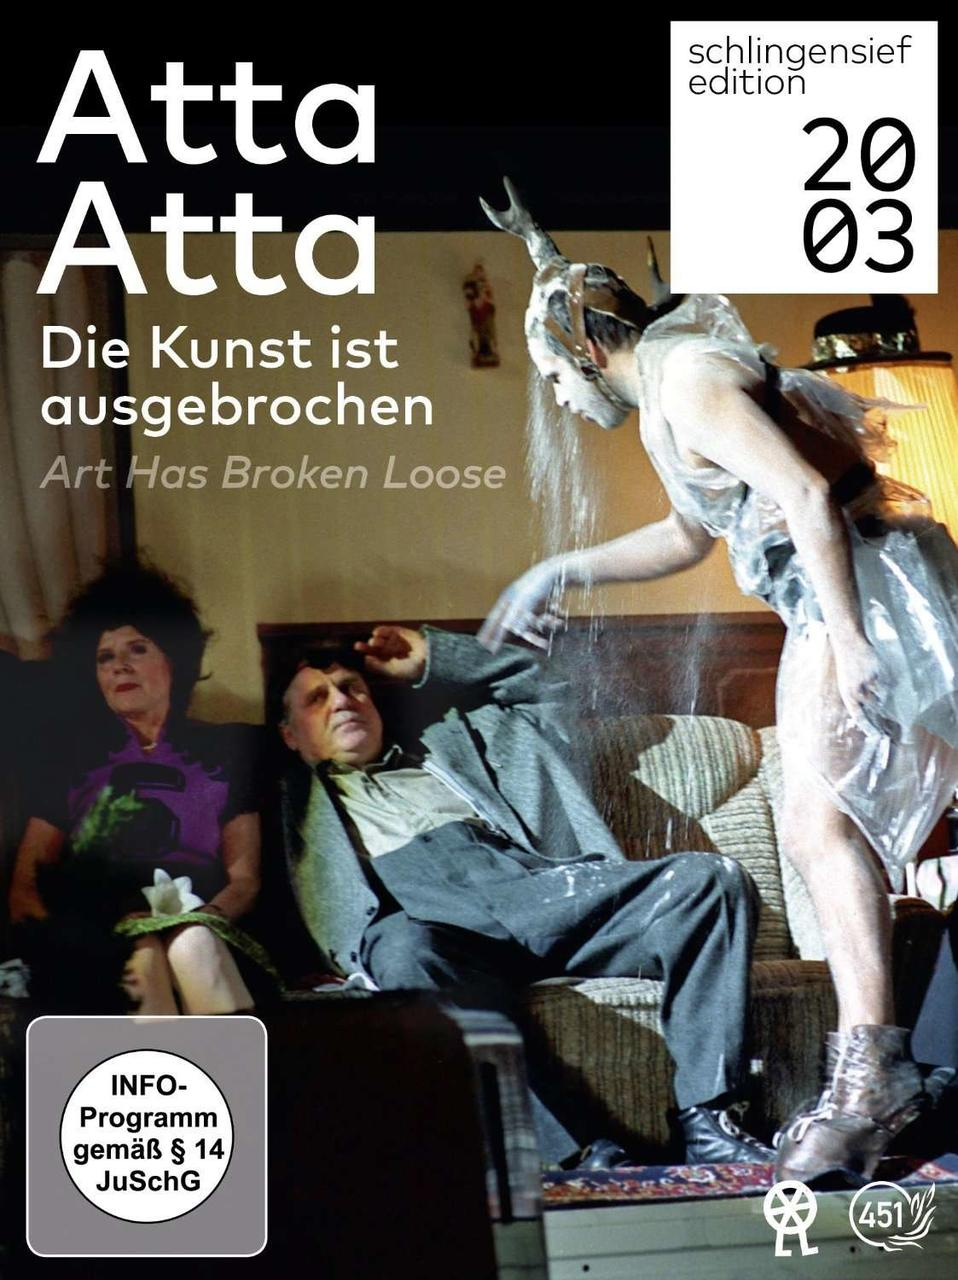 Atta Atta - ausgebrochen loose has Art Die Kunst broken / ist DVD